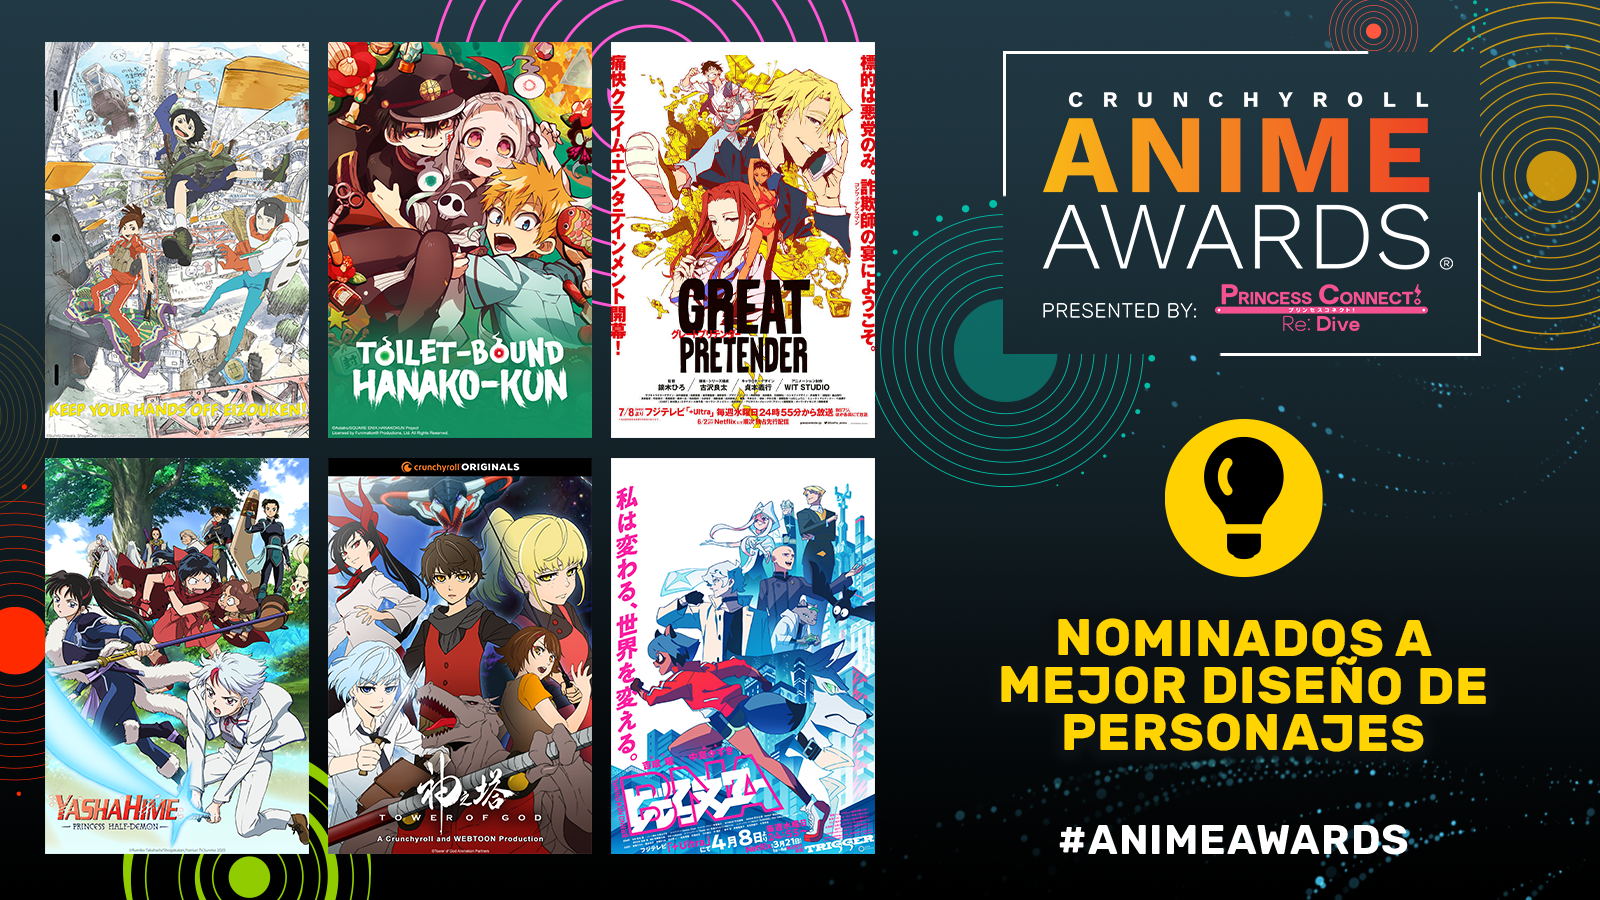 Crunchyroll Anime Awards 2021 ¡Vota por tu favorito! 11